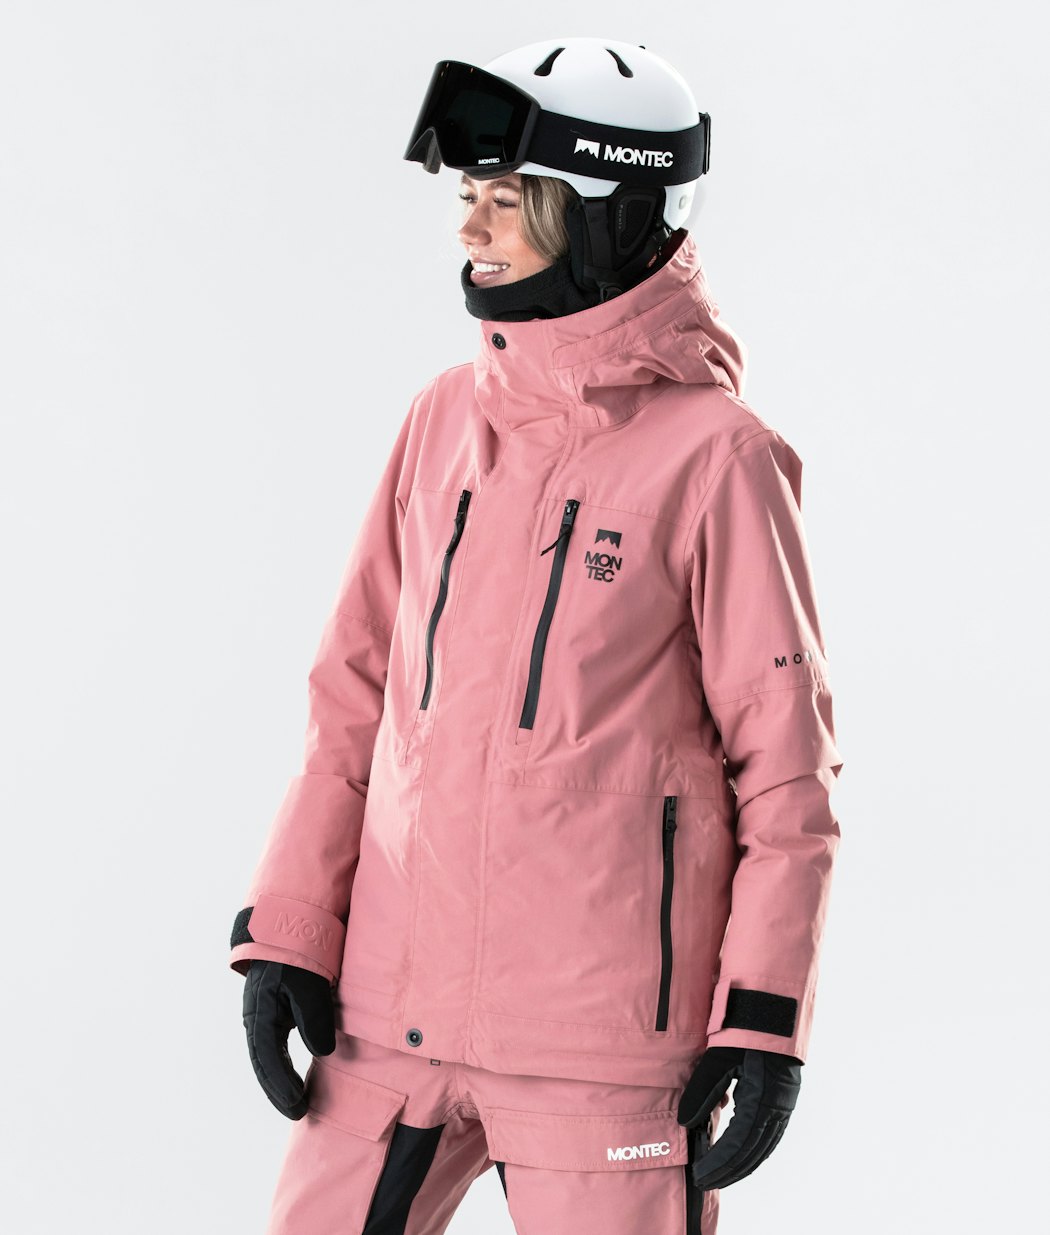 Fawk W 2020 Veste Snowboard Femme Pink